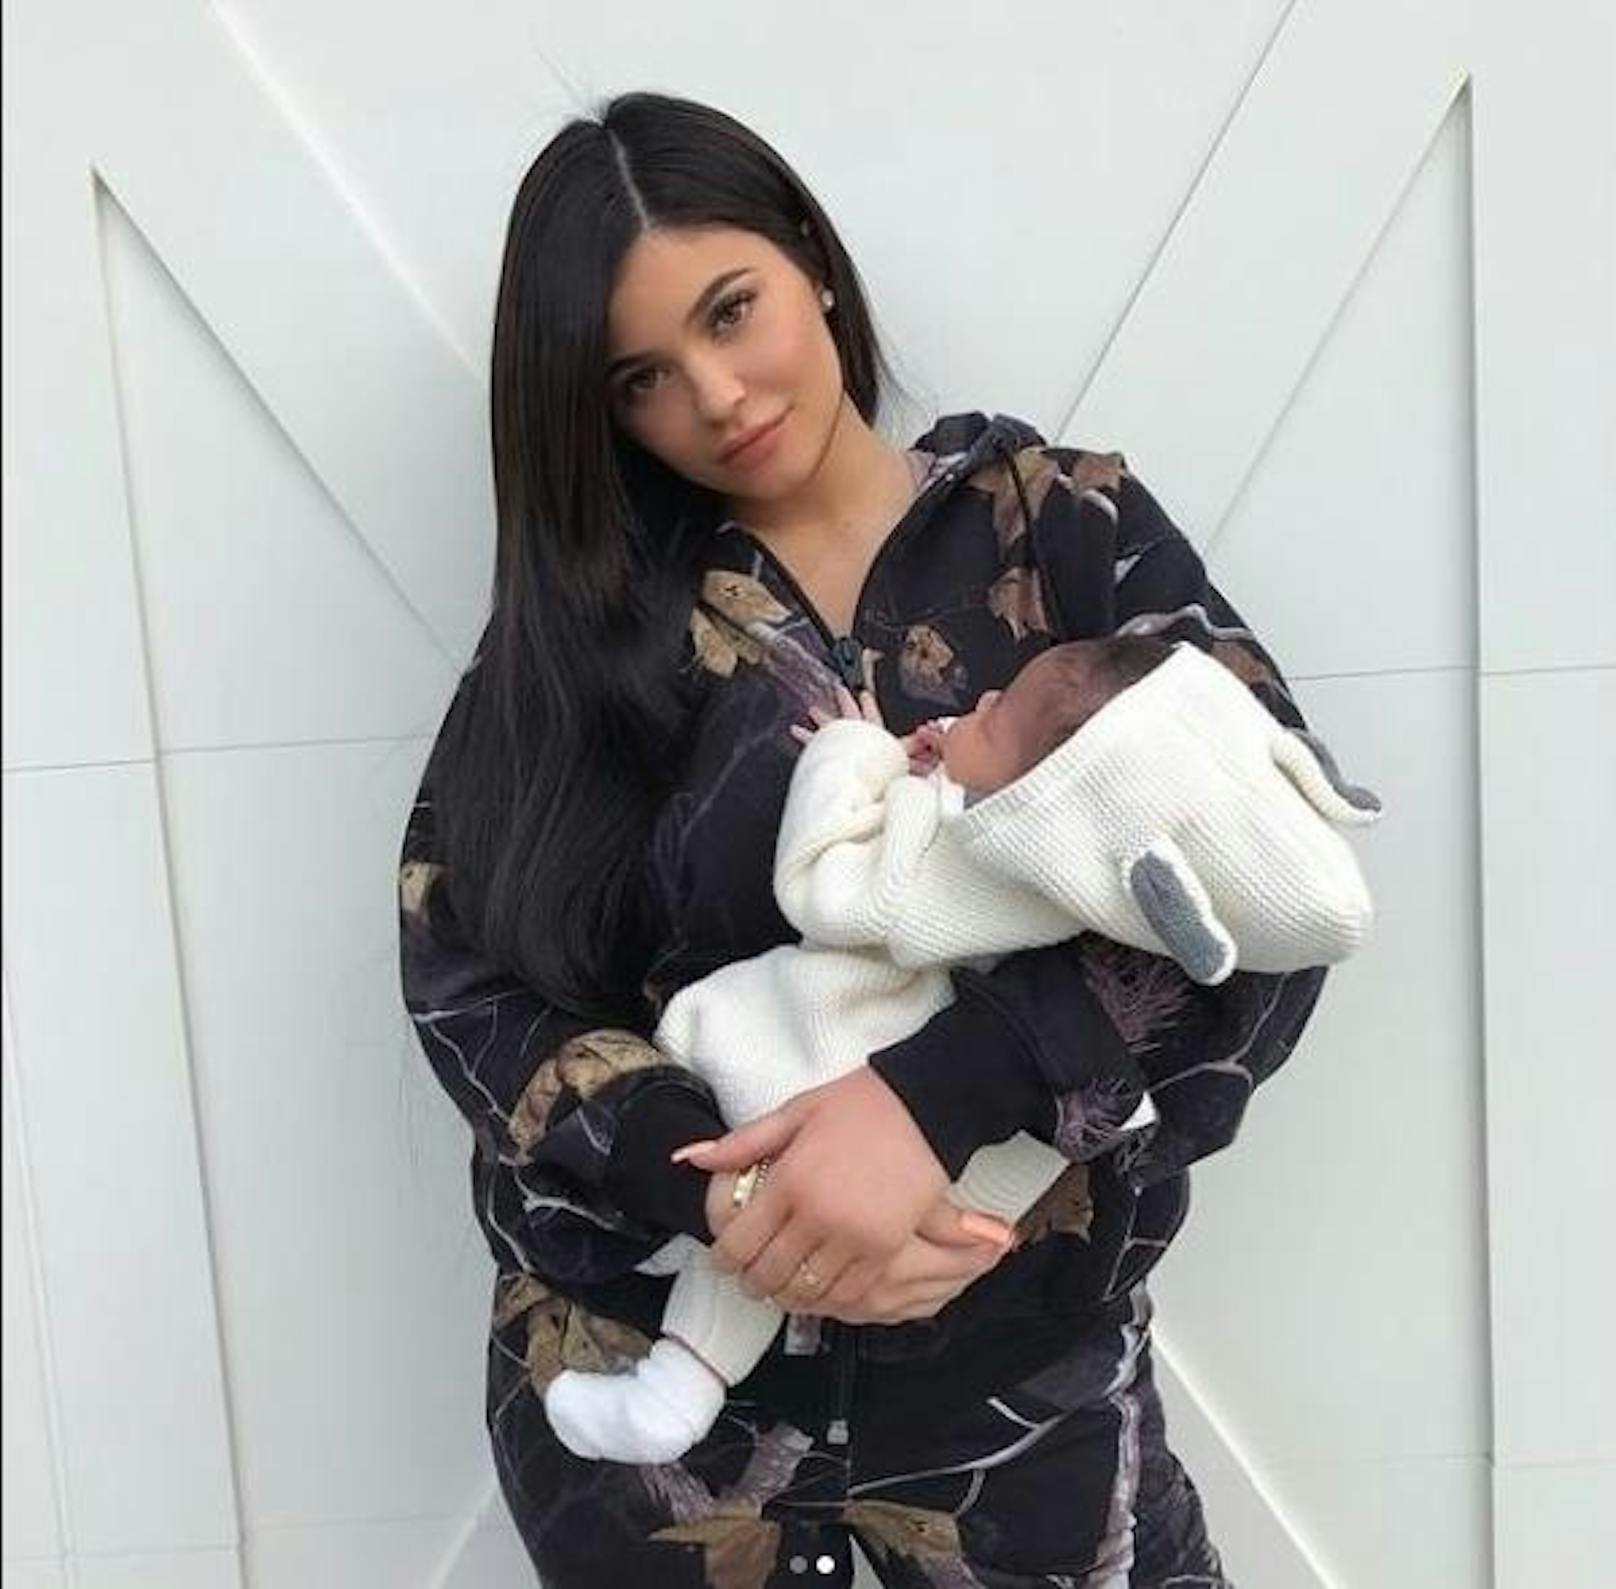 04.03.2018: Kylie Jenner zeigt sich erstmals mit Baby Stormi Webster. Die Kleine ist mittlerweile einen Monat alt.